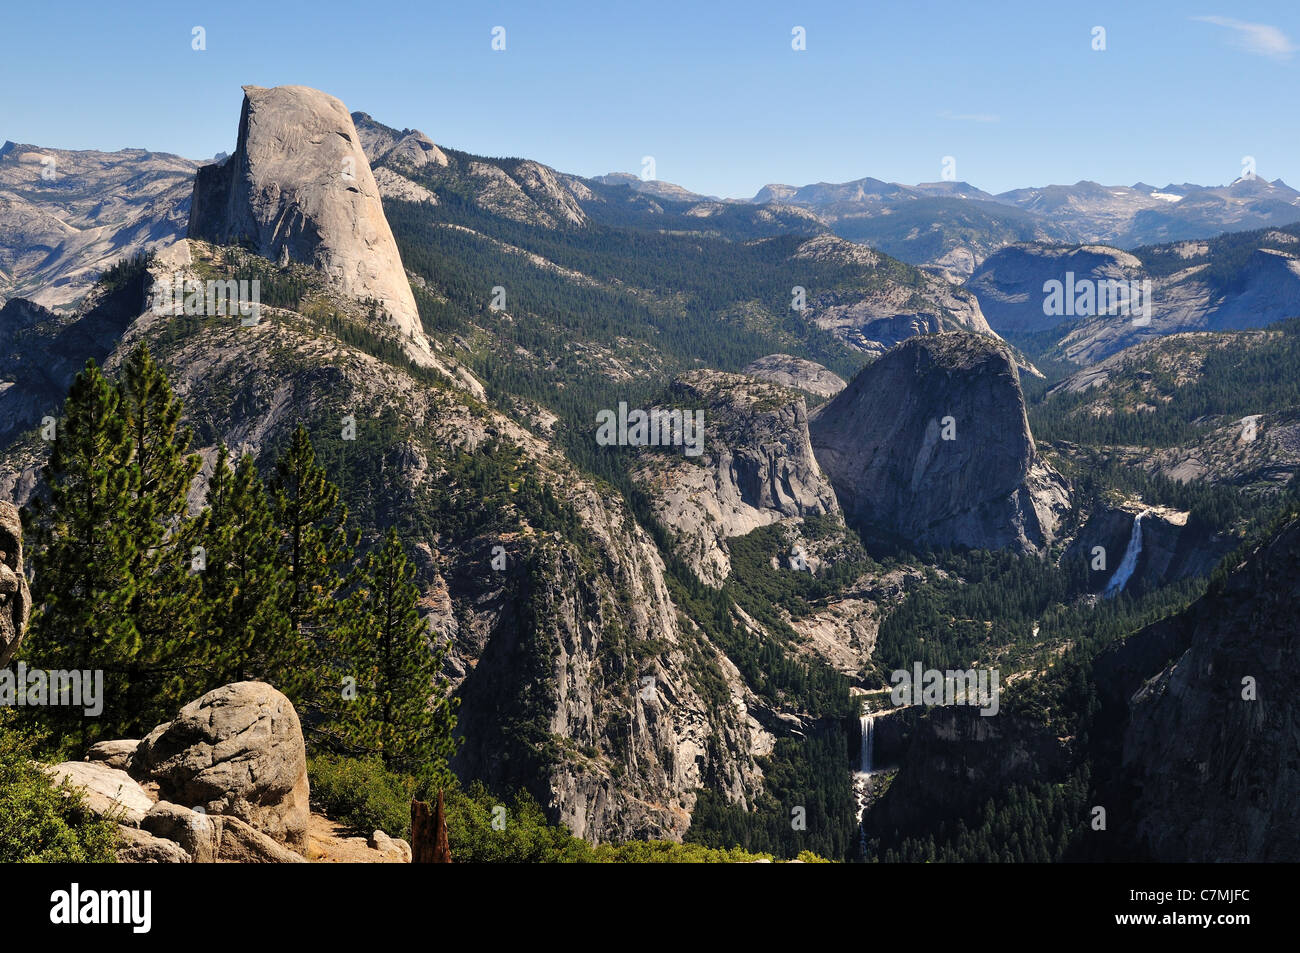 Vista de la Cúpula de mitad y de Vernal y Nevada cae de Washburn. Parque Nacional Yosemite, California, USA. Foto de stock